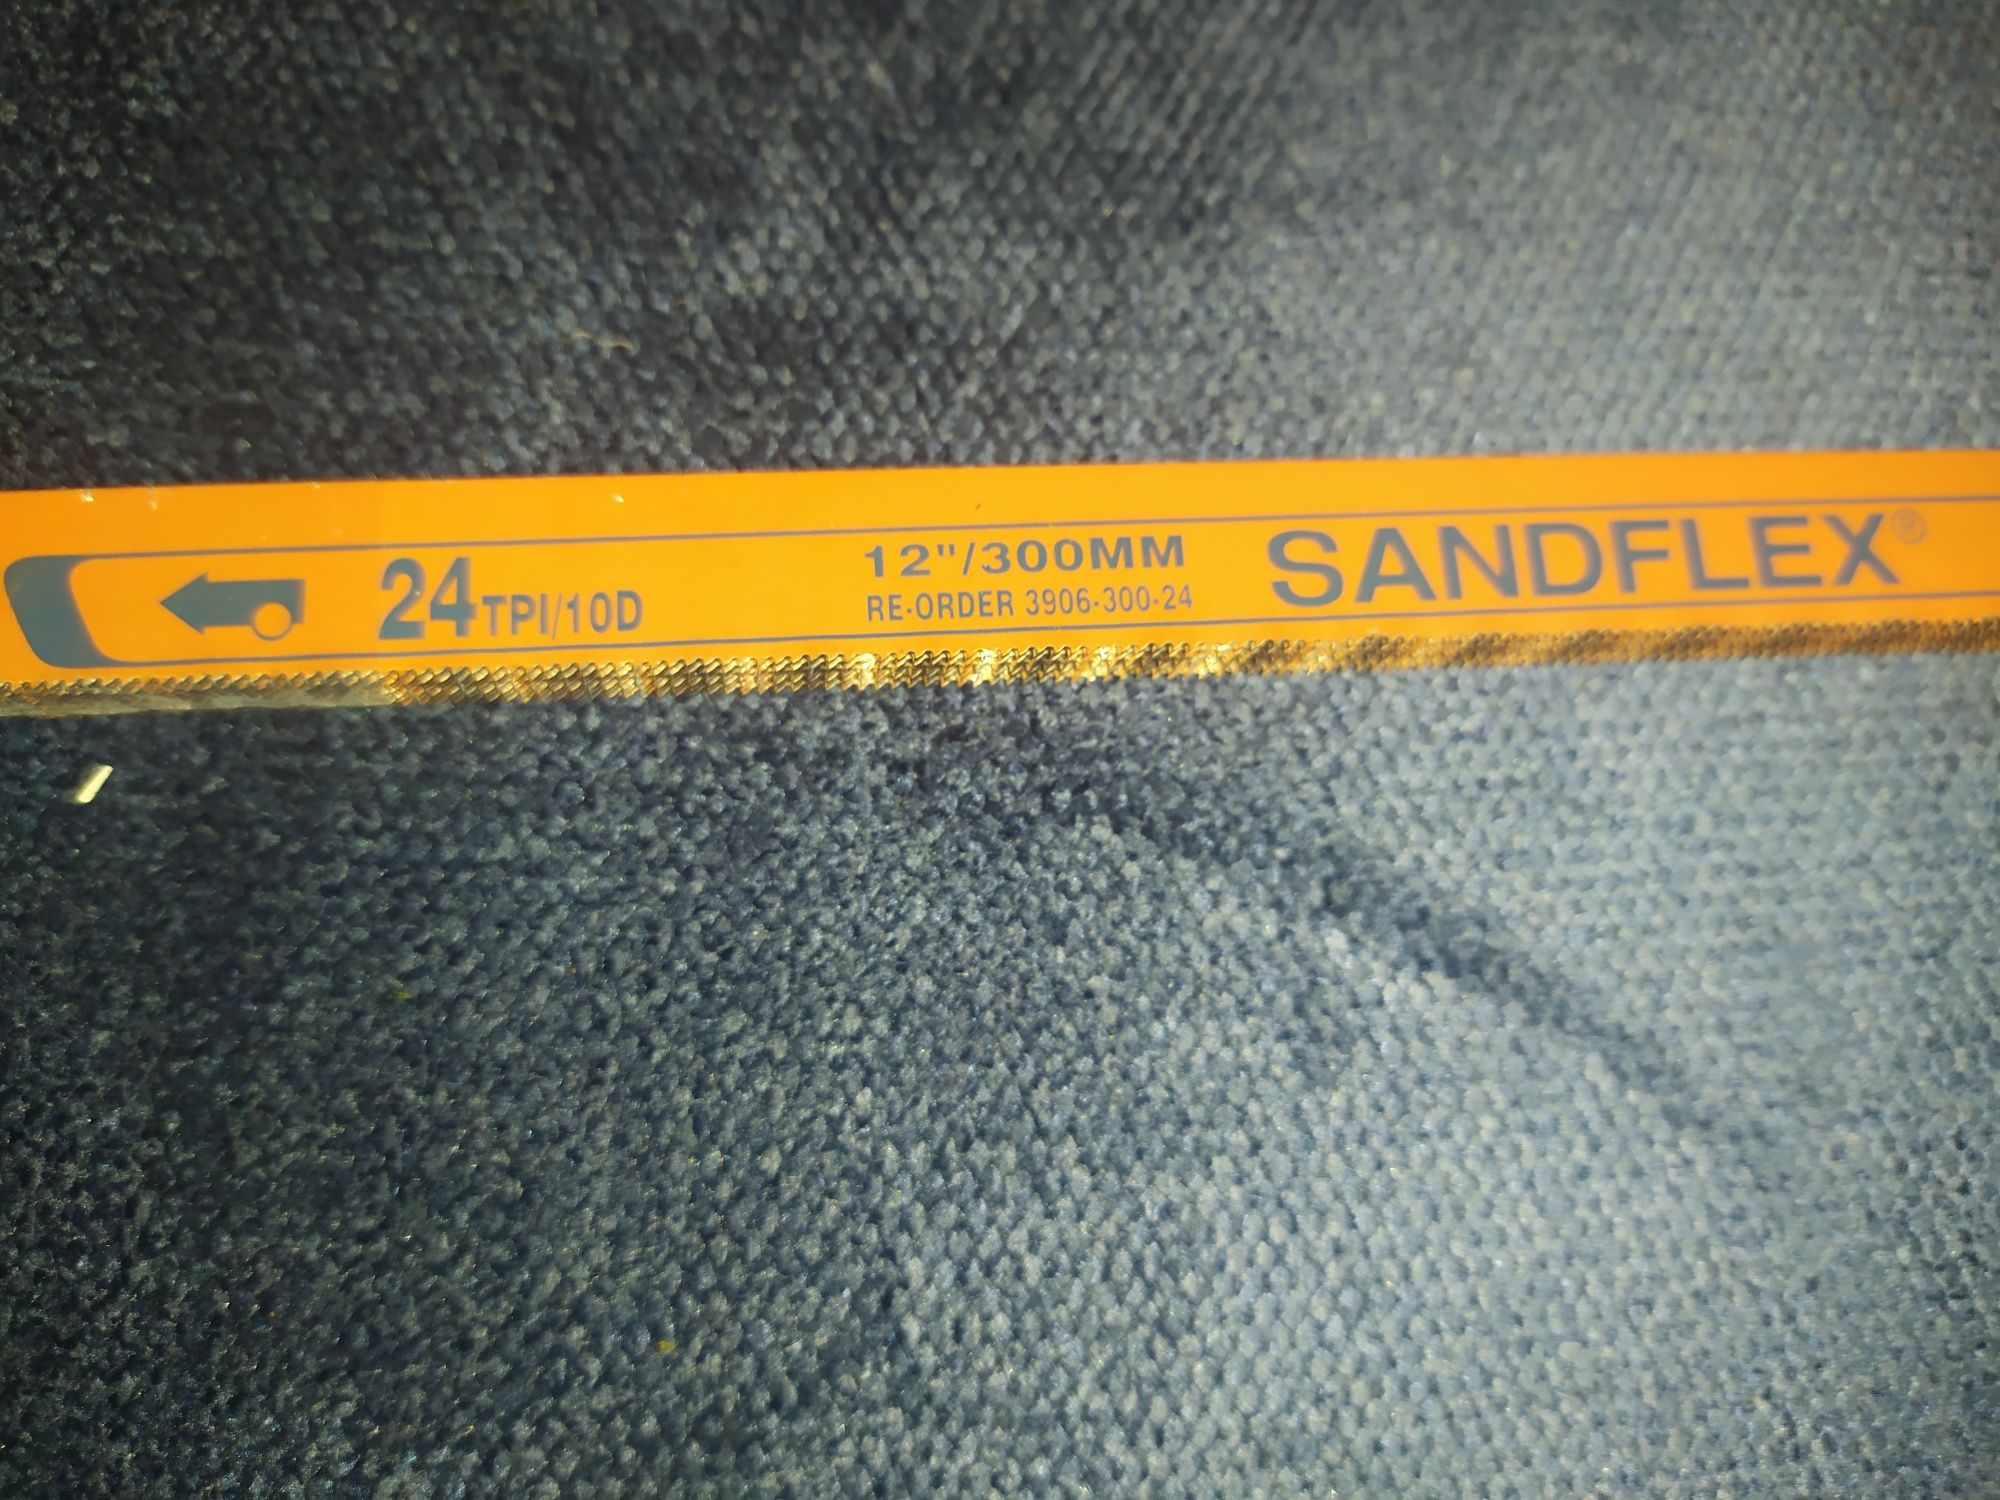 Sprzedam brzeszczoty szwedzkiej firmy SANDFLEX 12"/300mm